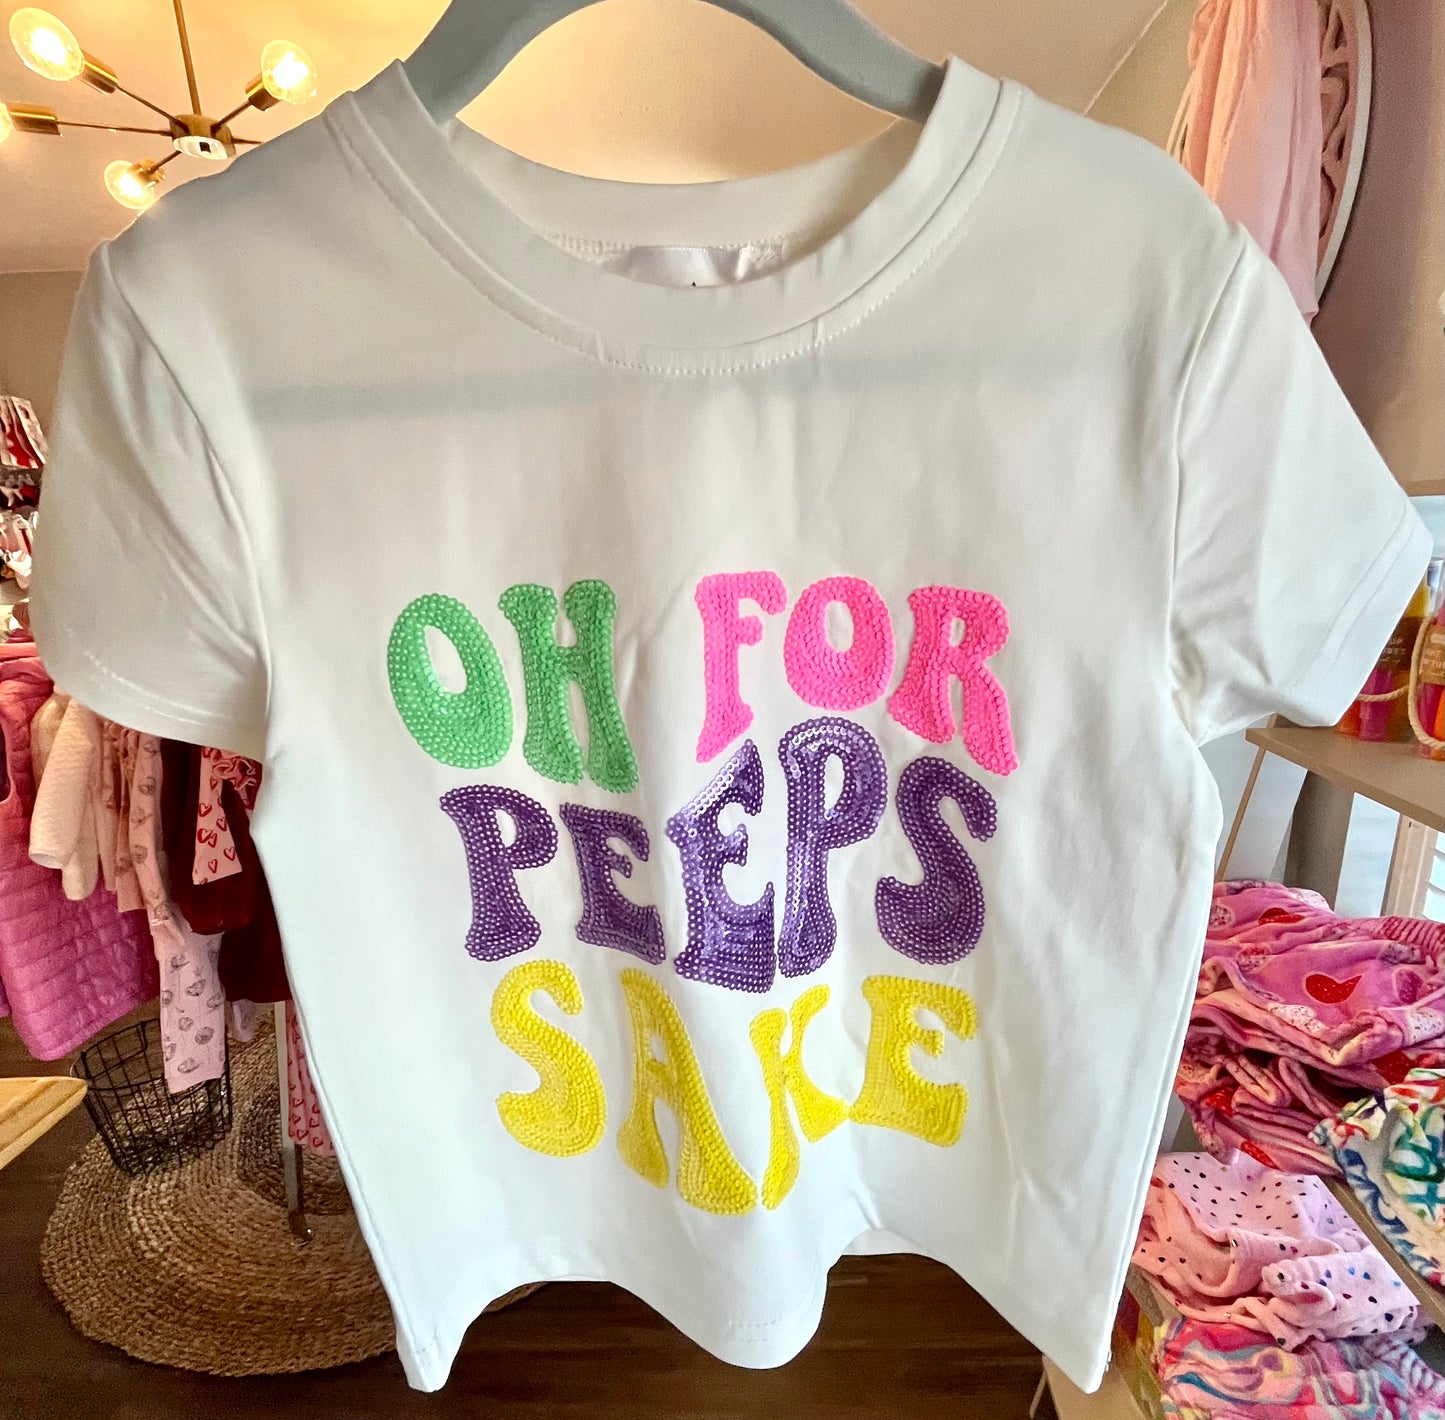 Belle Cher Oh For Peeps Sake Shirt